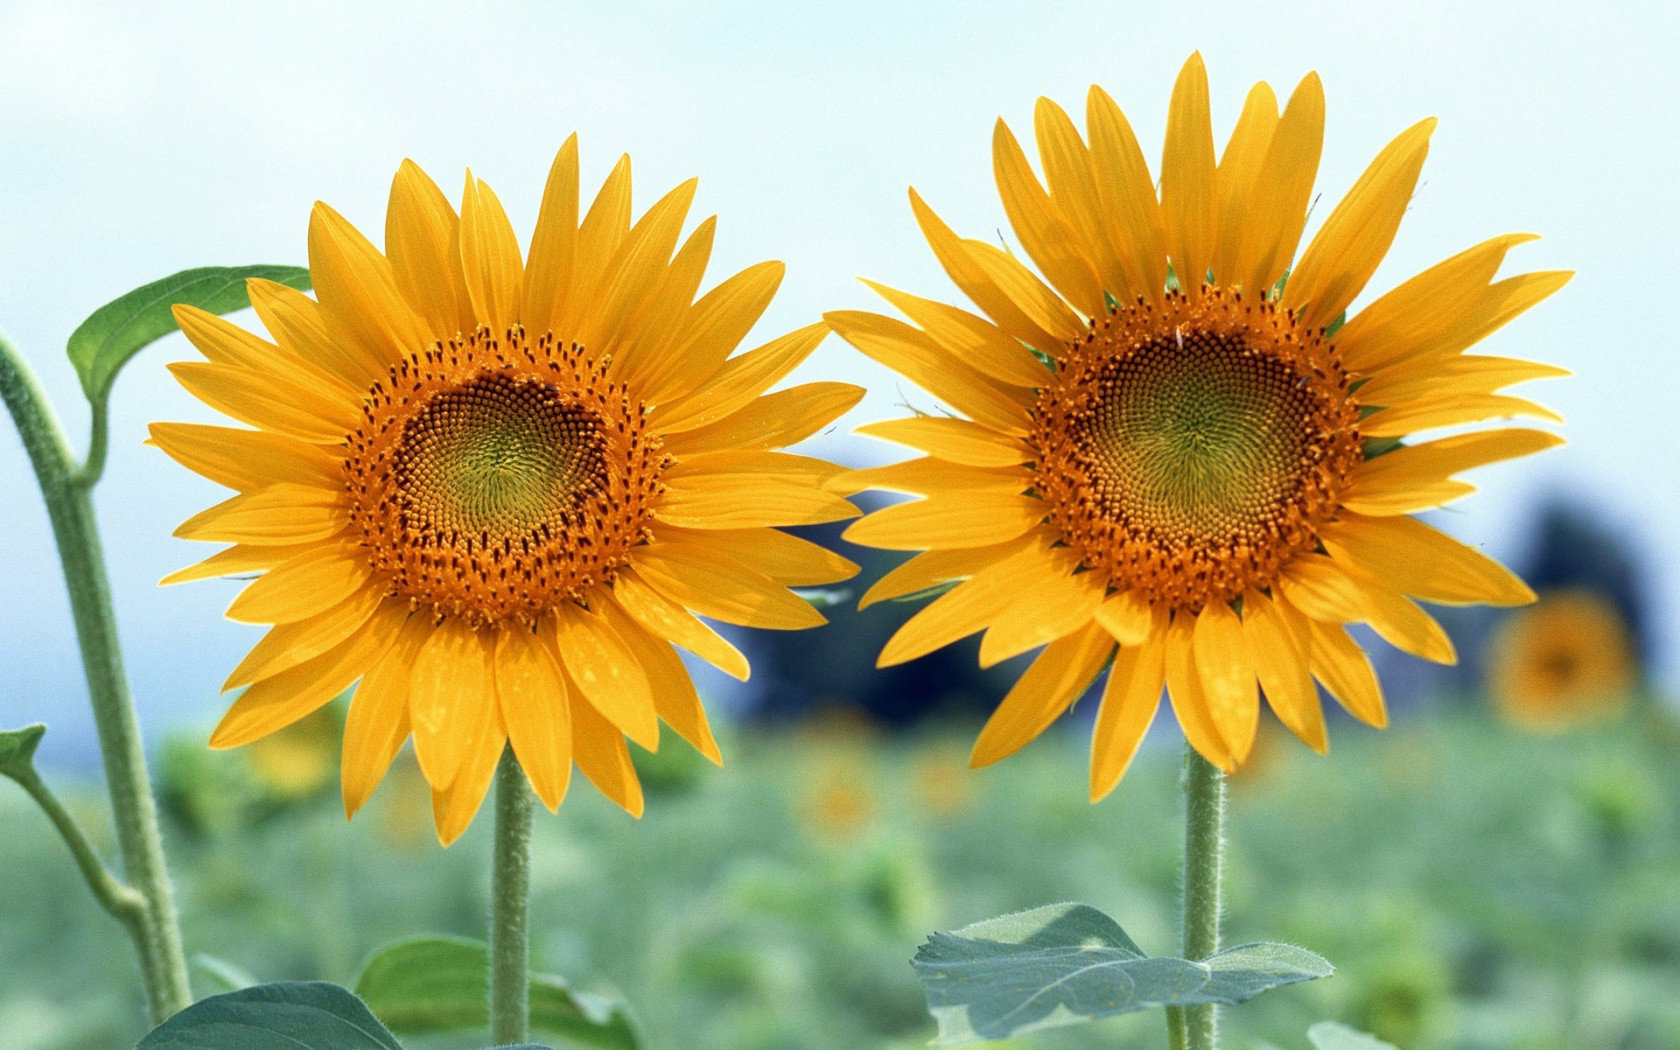 Best Sunflower Wallpaper Id - High Resolution Sunflower Desktop Background Hd - HD Wallpaper 